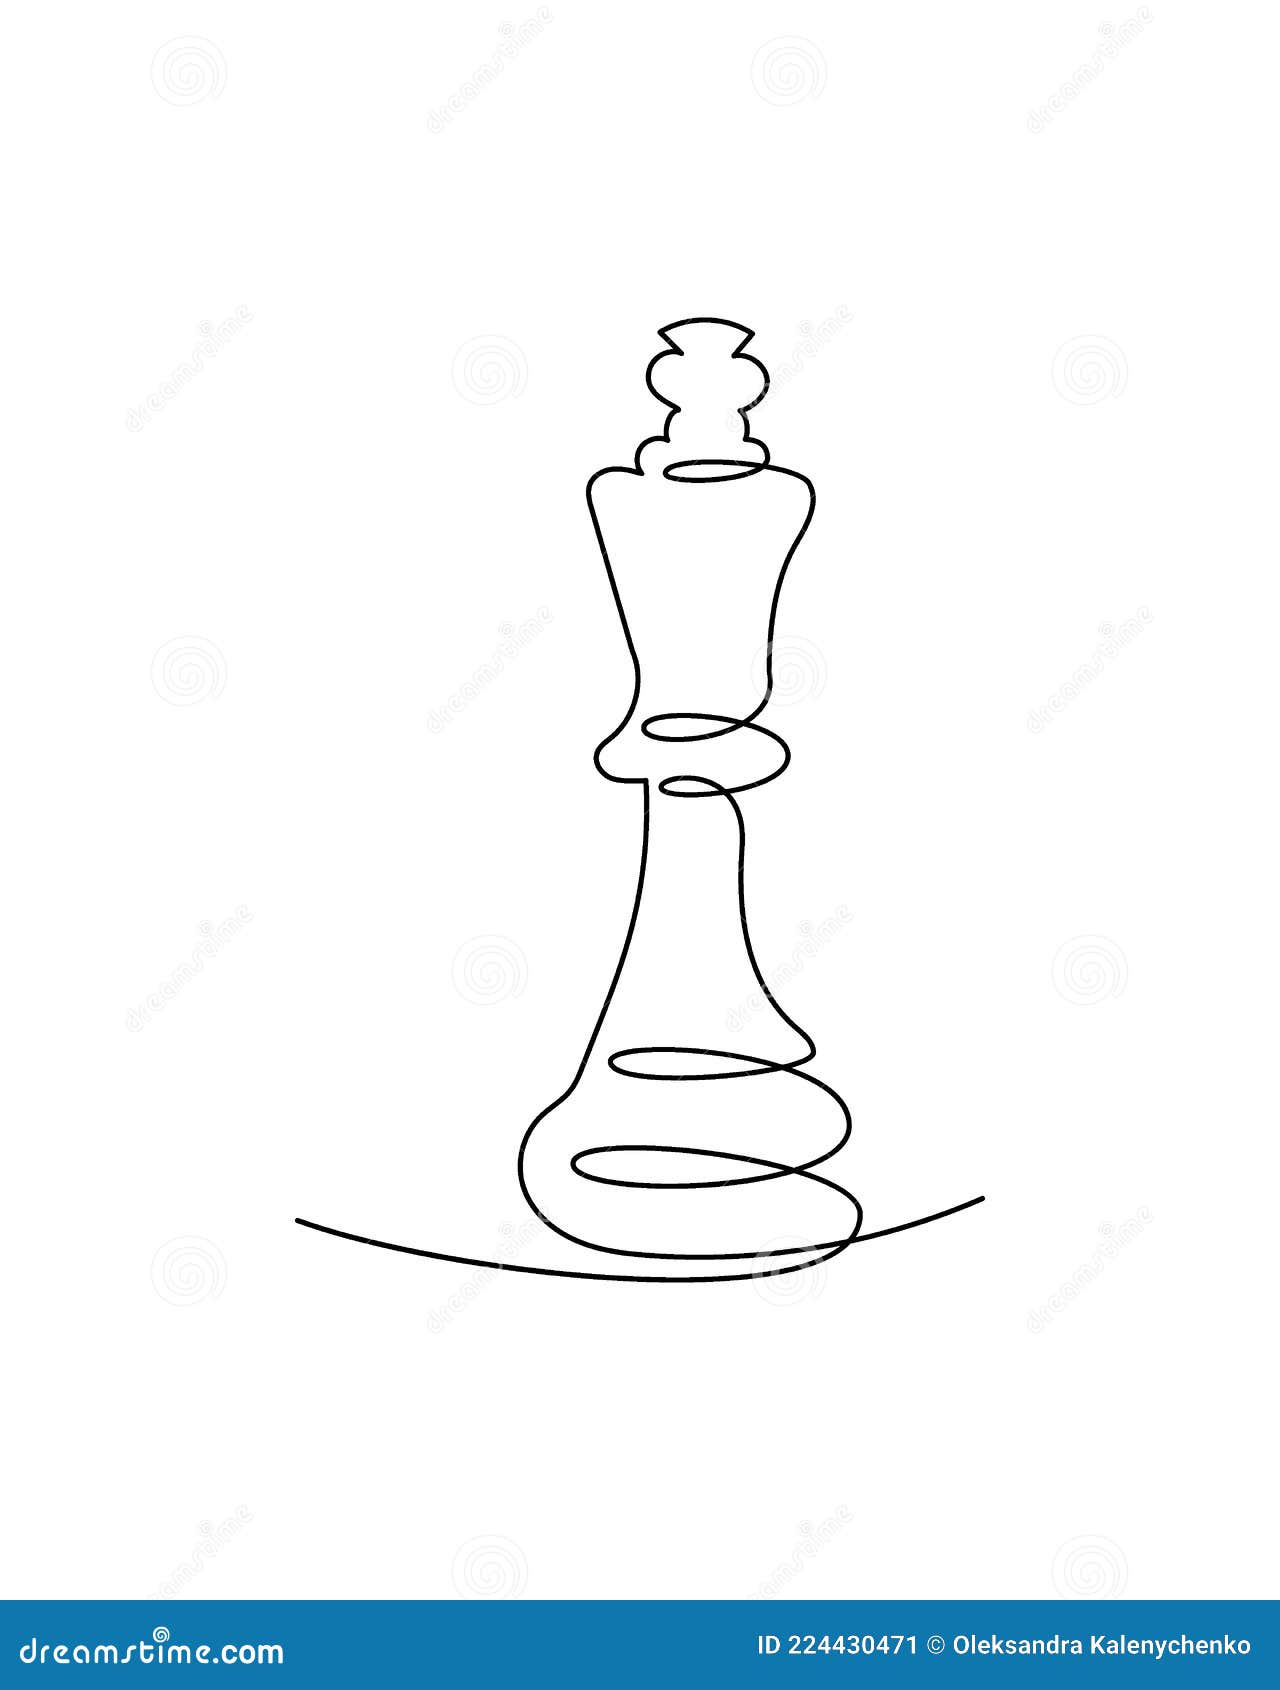 desenho de linha contínua da figura do xadrez se movendo na